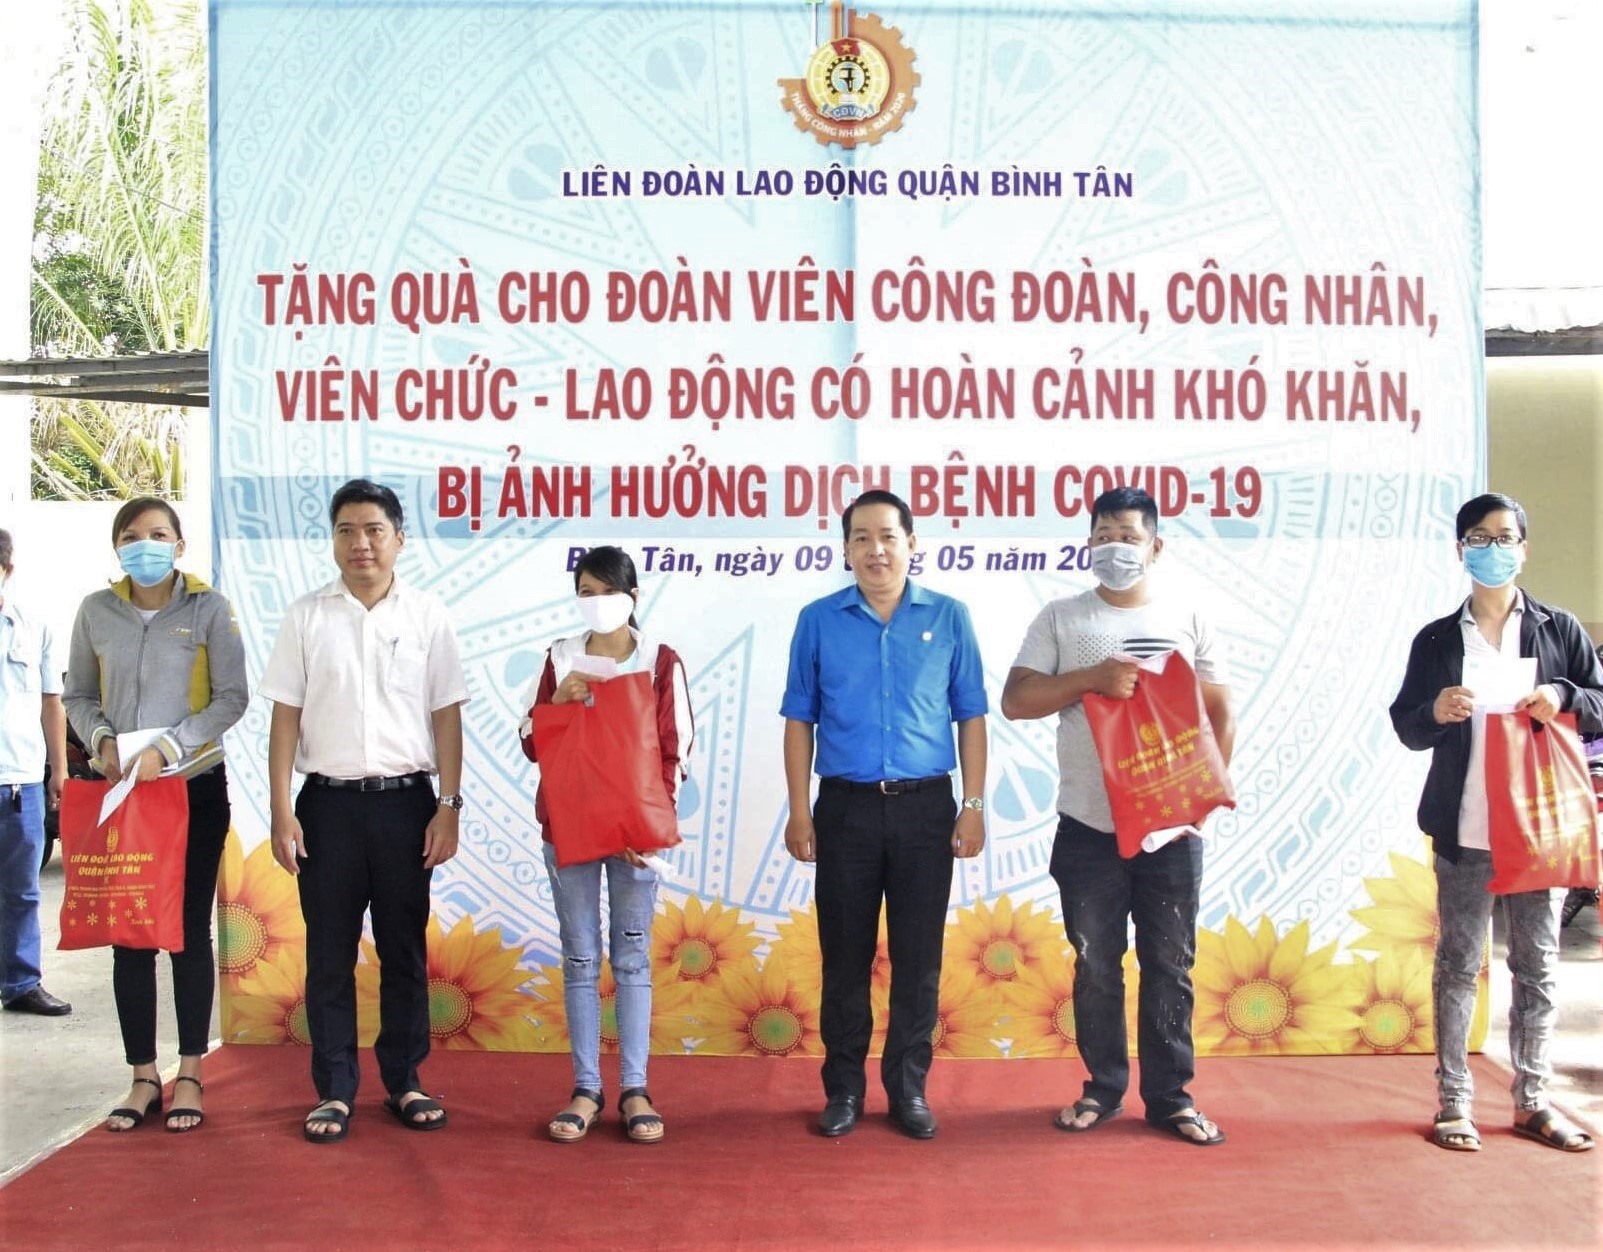 LĐLĐ Quận Bình Tân tổ chức trao quà cho các CNLĐ bị ảnh hưởng bởi dịch COVID-19. Ảnh LĐLĐ Quận Bình Tân cung cấp.